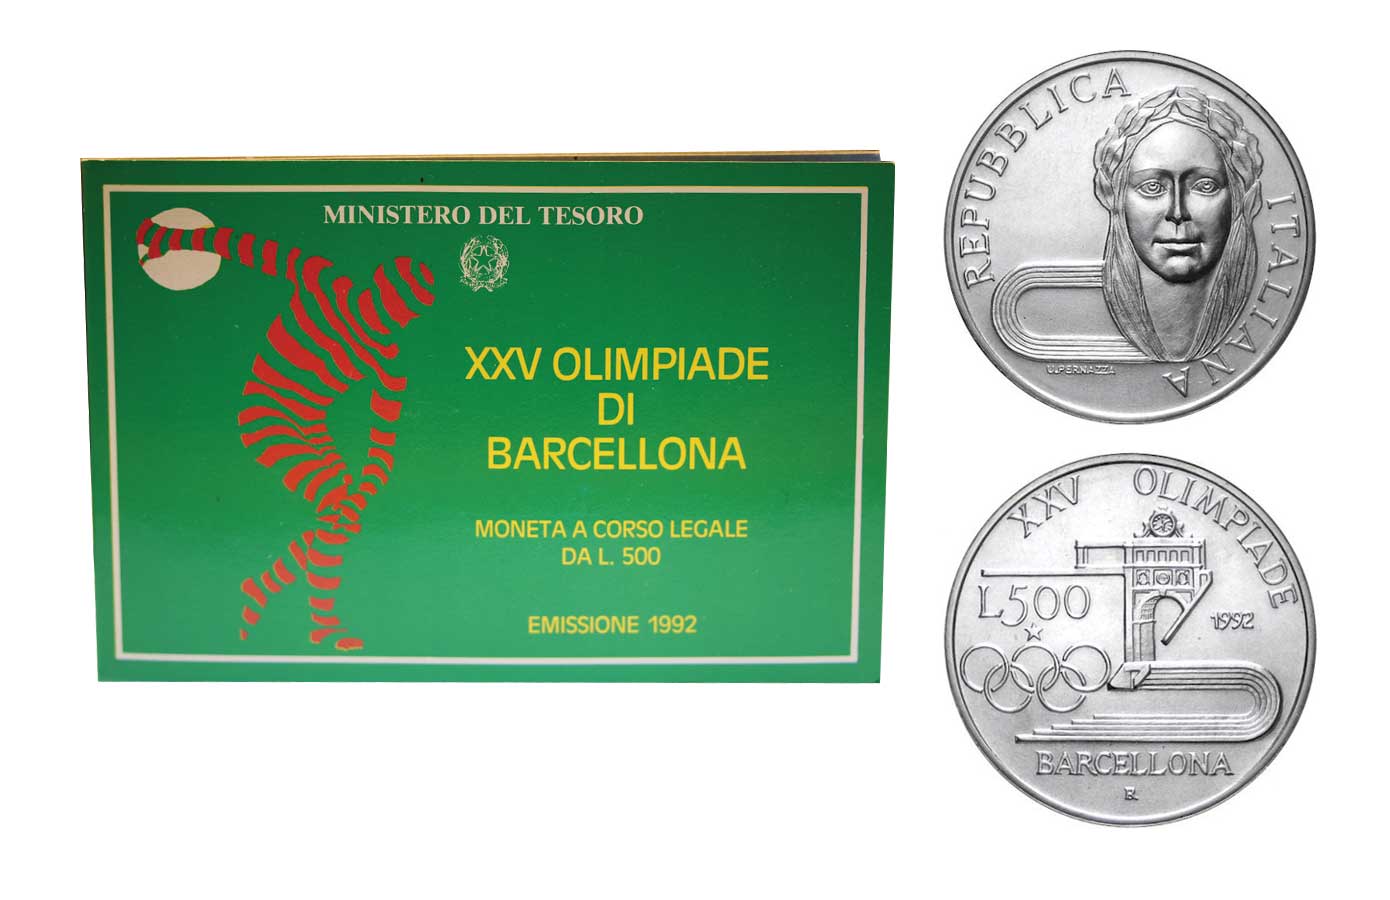 L.500 "Olimpiadi di Barcellona" in confezione ufficiale